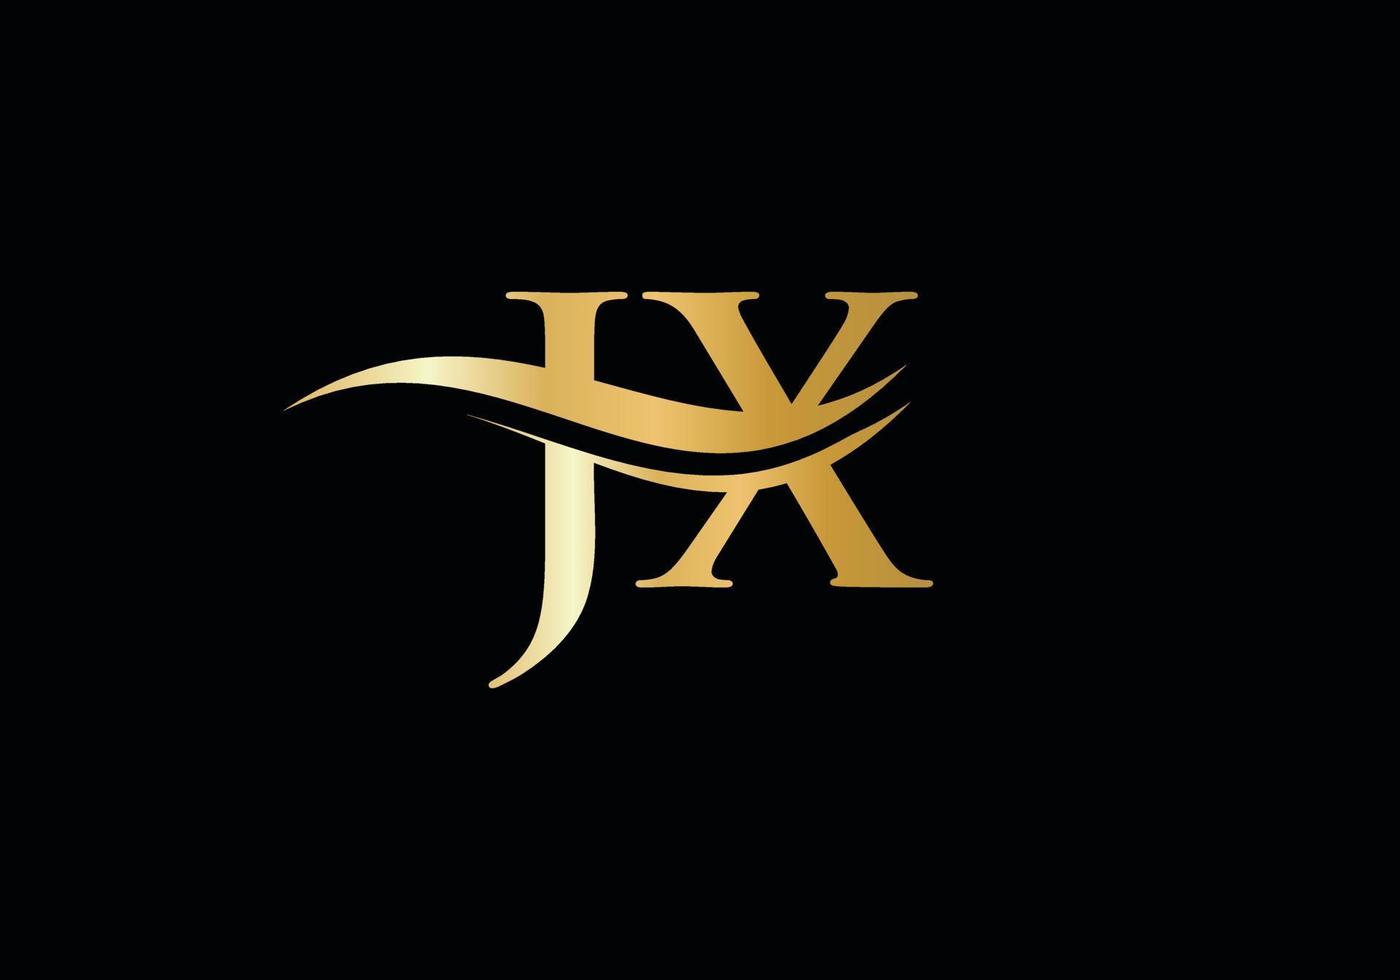 logo lié jx pour l'entreprise et l'identité de l'entreprise. vecteur de logo créatif lettre jx